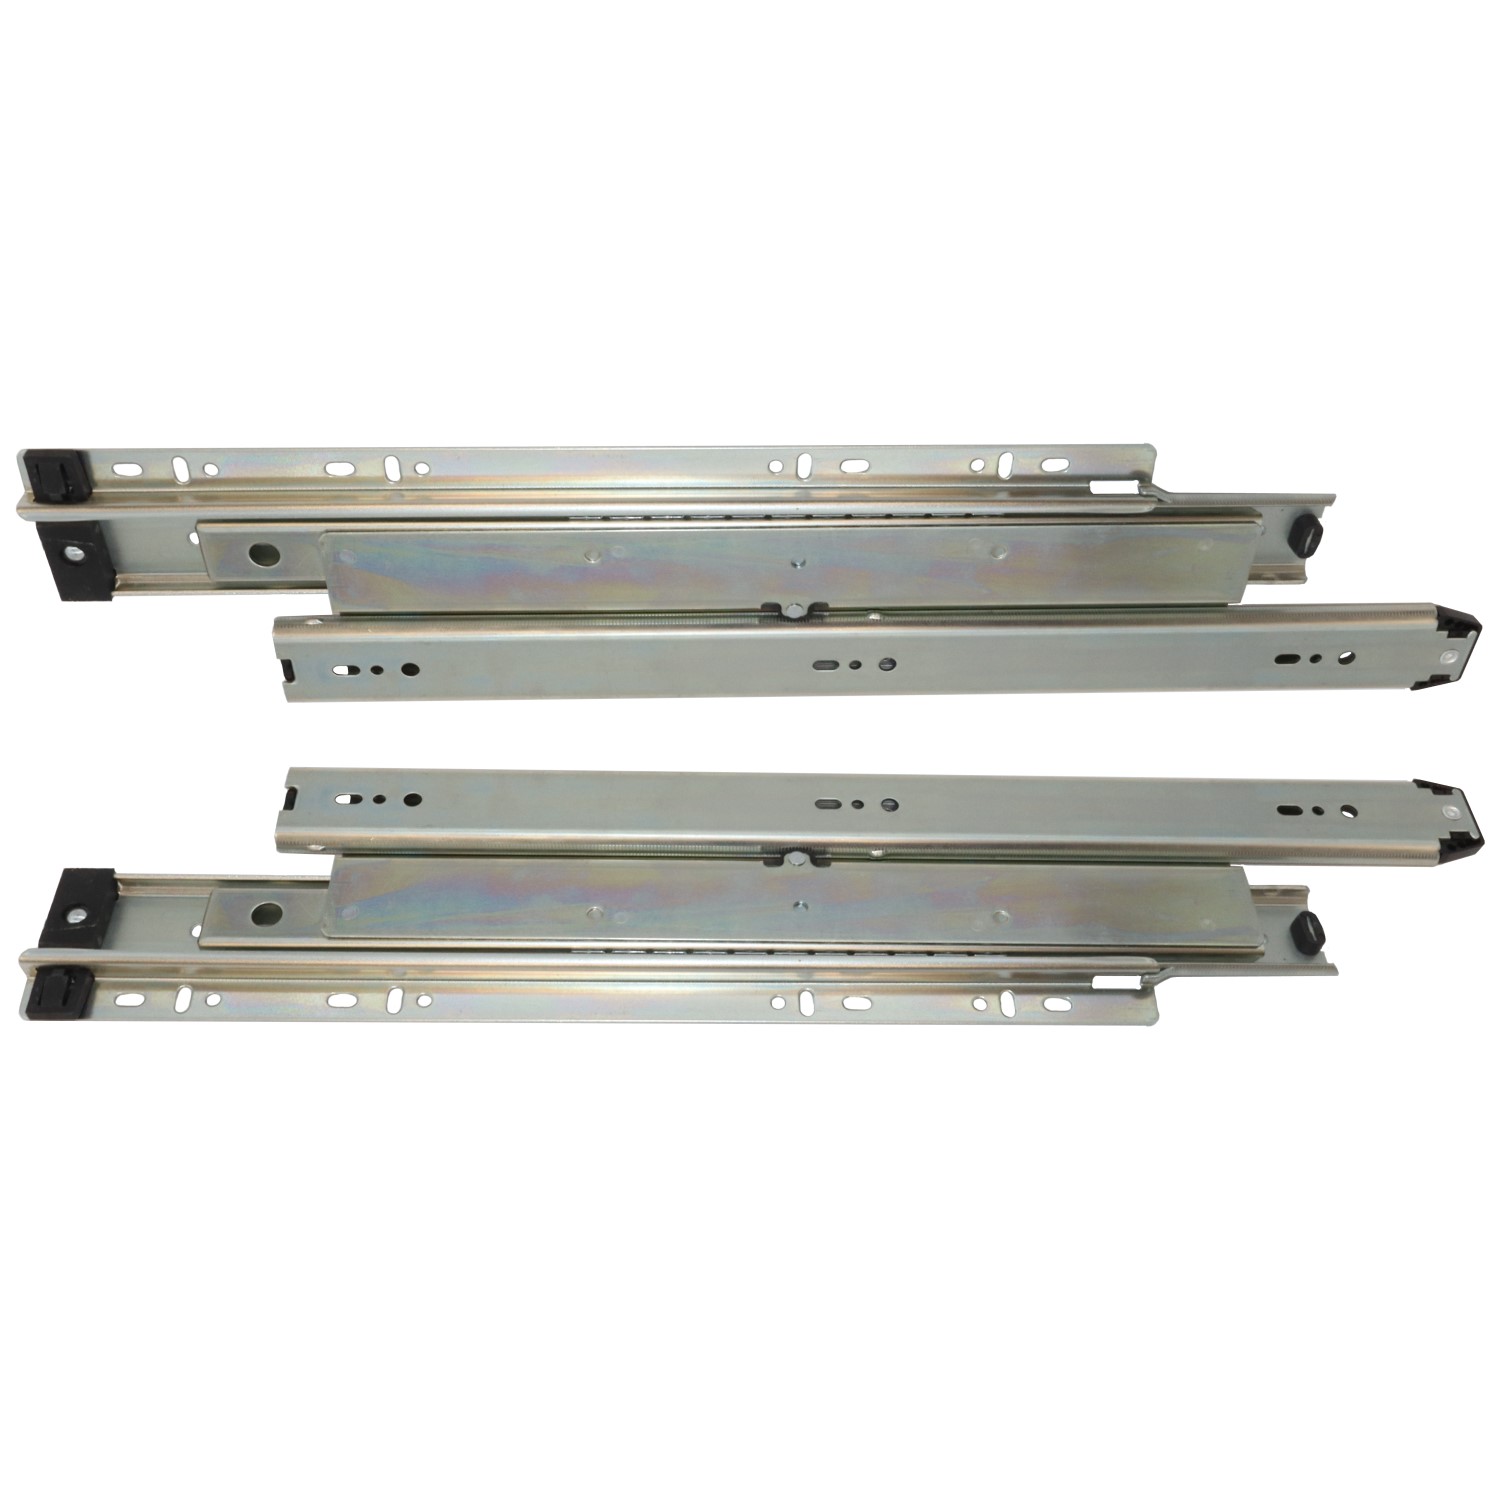 File cabinet slide 1-3/8" overextension zinc - 400mm